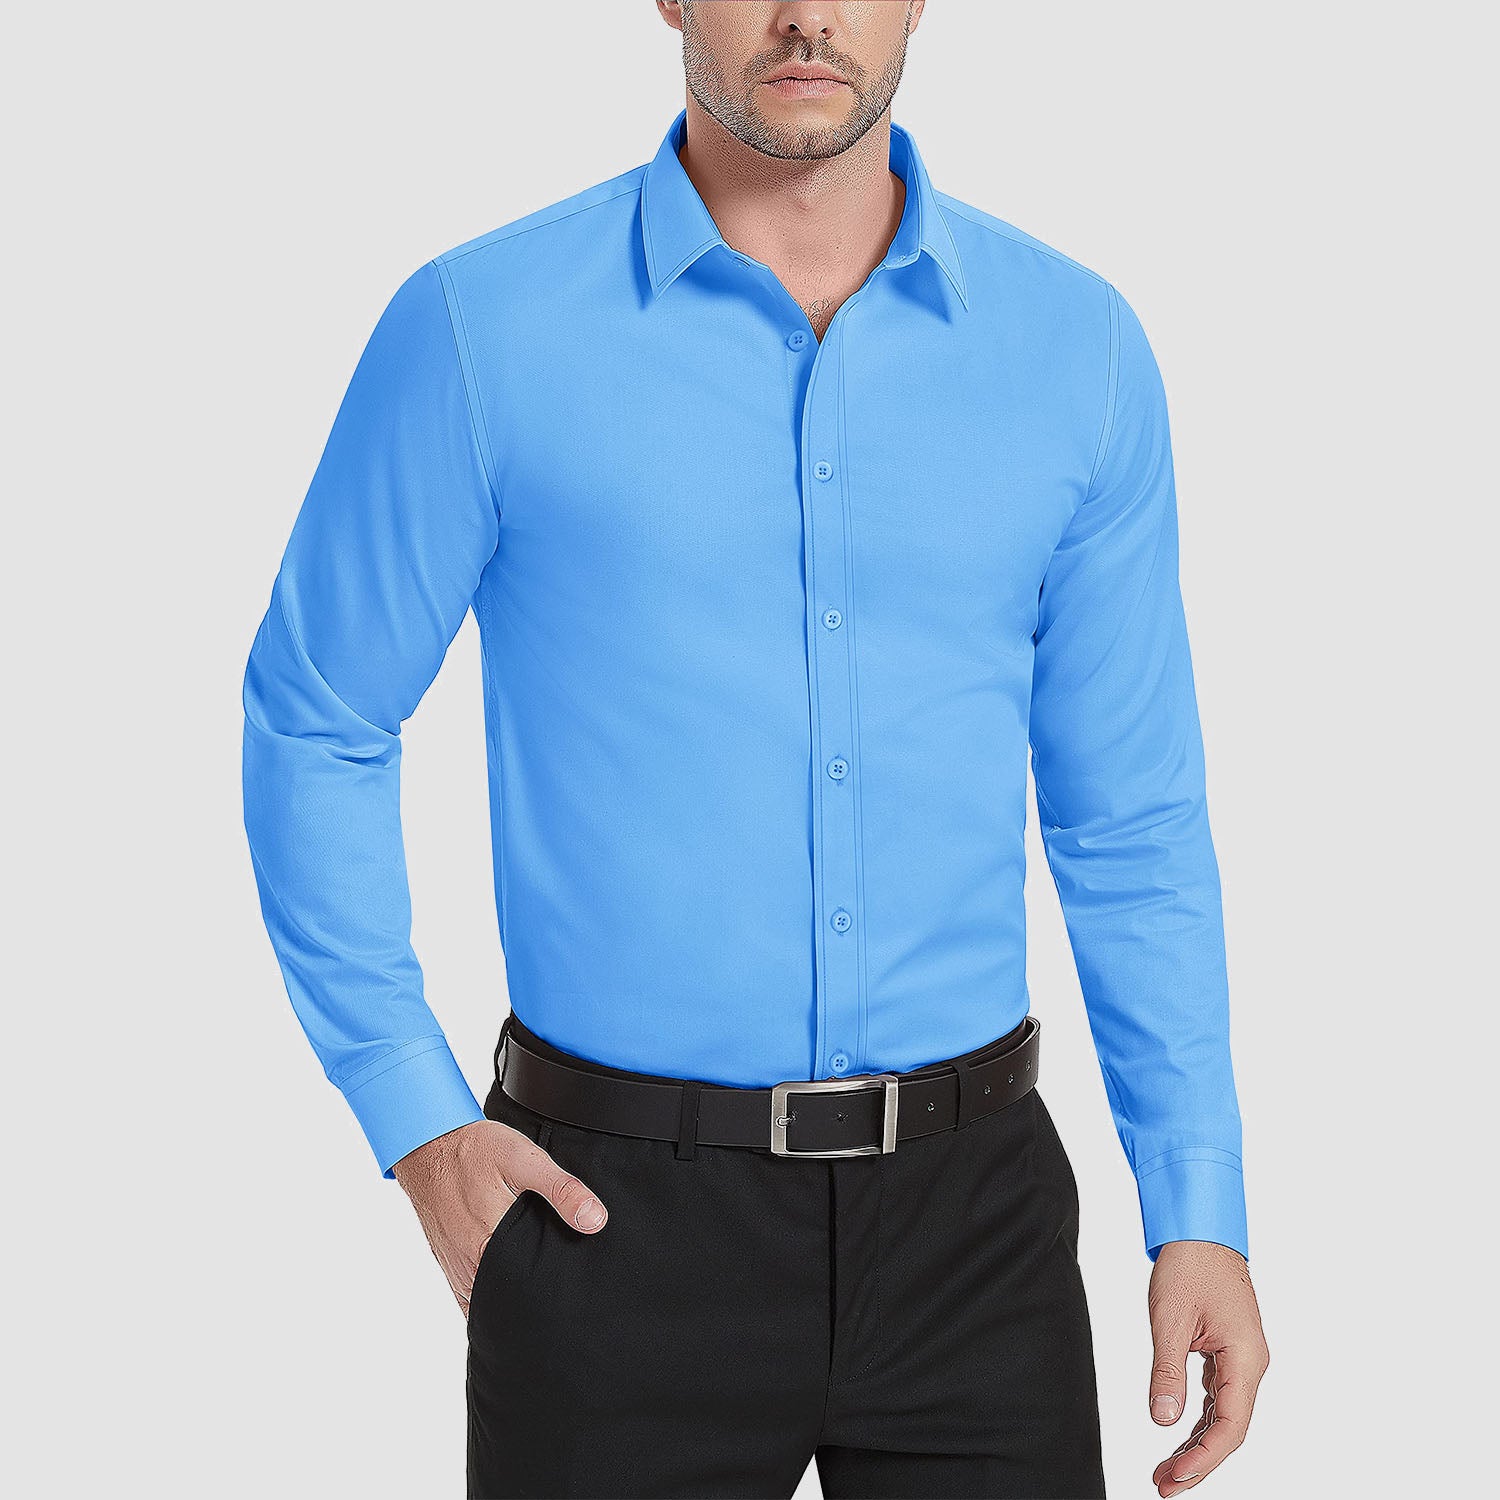 Men's Dress Shirt Long Sleeve Button Down Shirts Wrinkle-Free Lightweight Collared Shirt Regular Fit